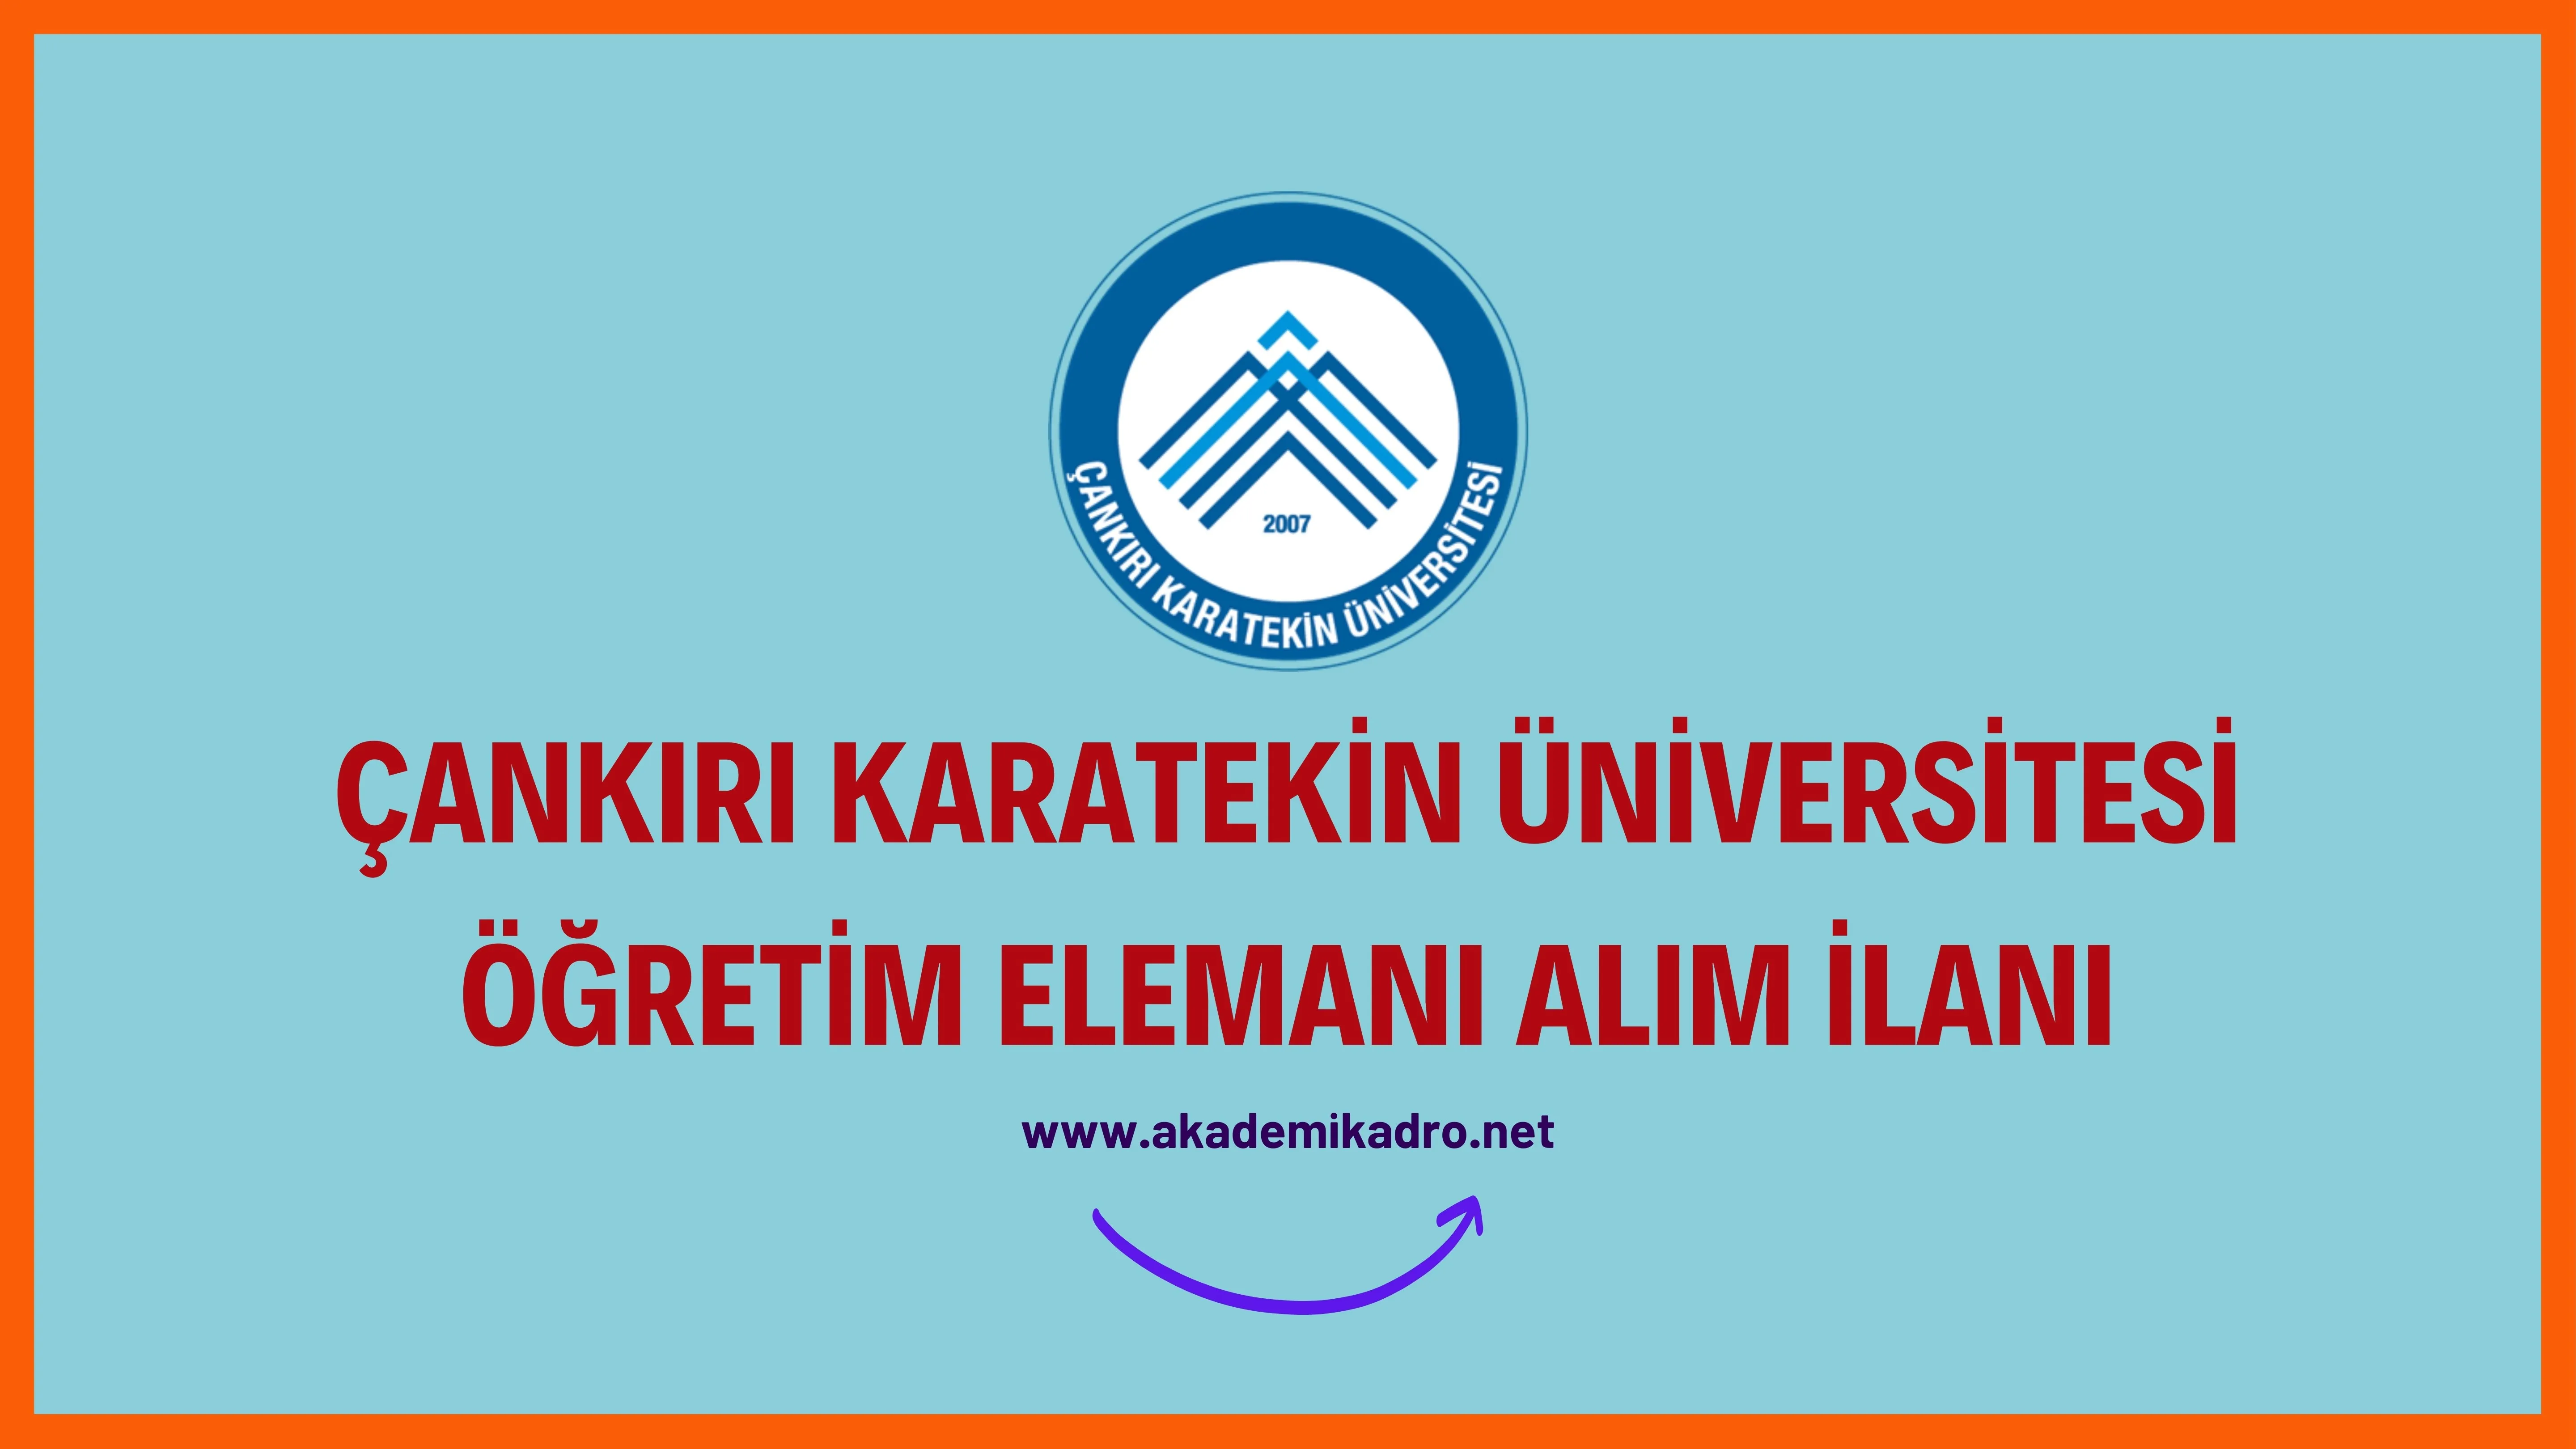 Çankırı Karatekin Üniversitesi Öğretim görevlisi ve öğretim üyesi olmak üzere 22 Öğretim elemanı alacak.